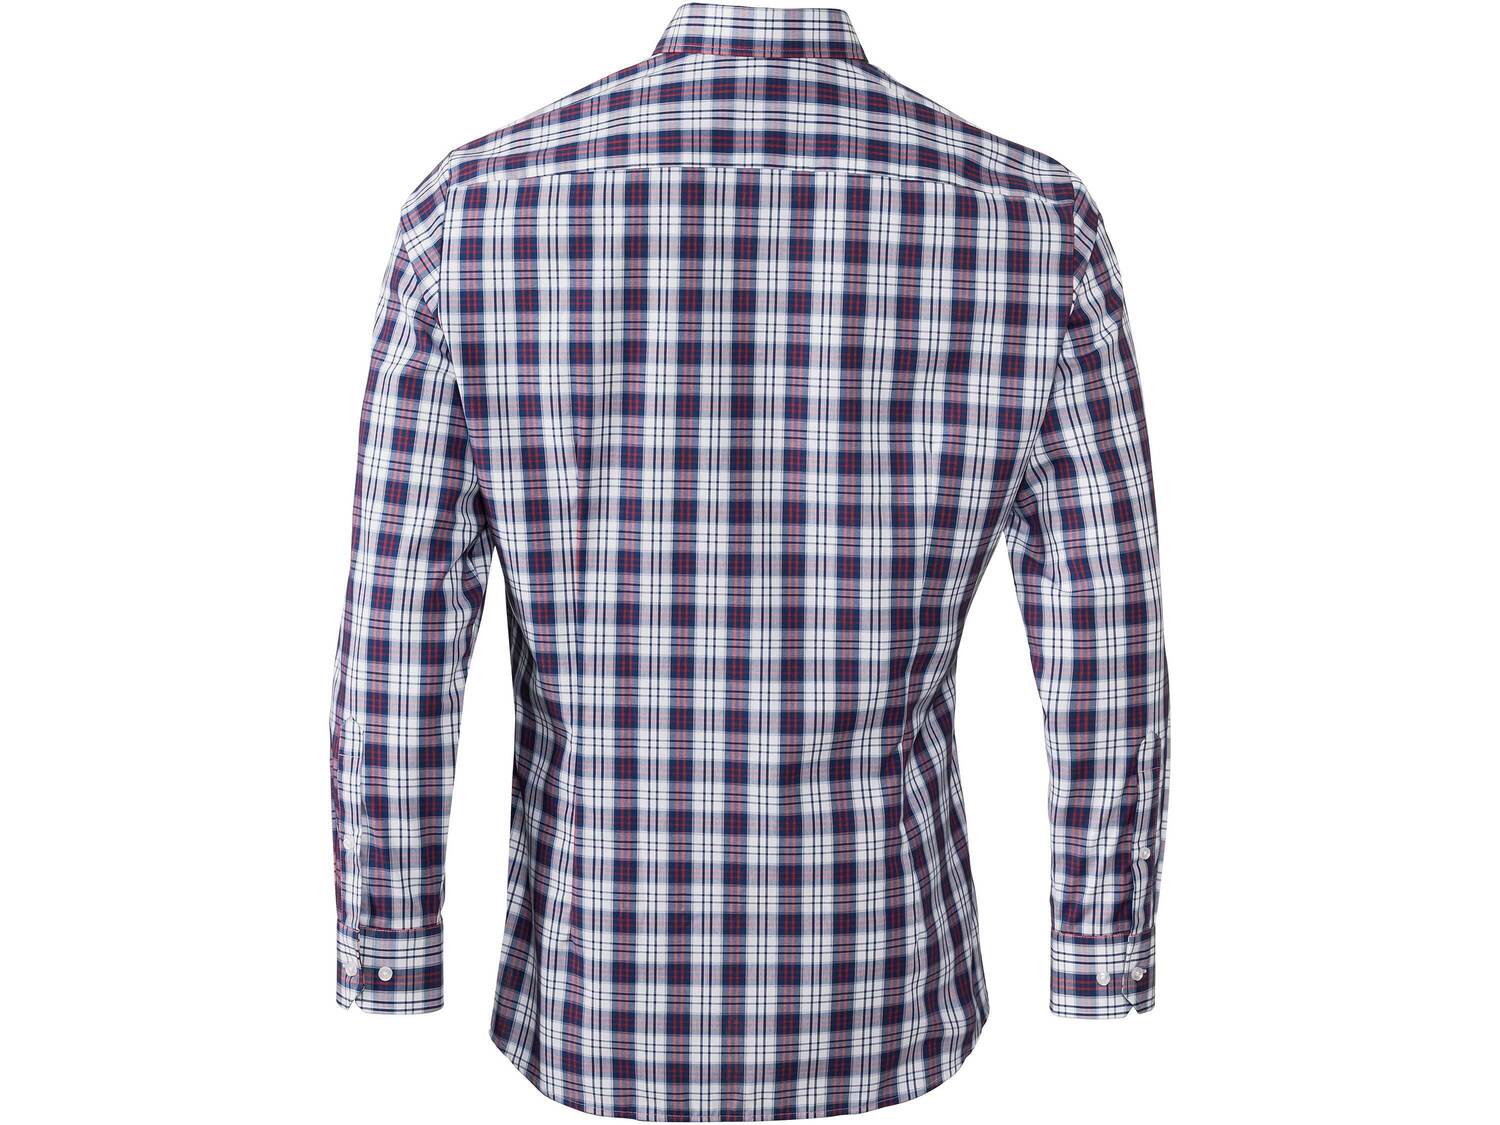 Koszula biznesowa , cena 49,99 PLN 
- rozmiary: 39-42
- 100% bawełny
- wkładki ...